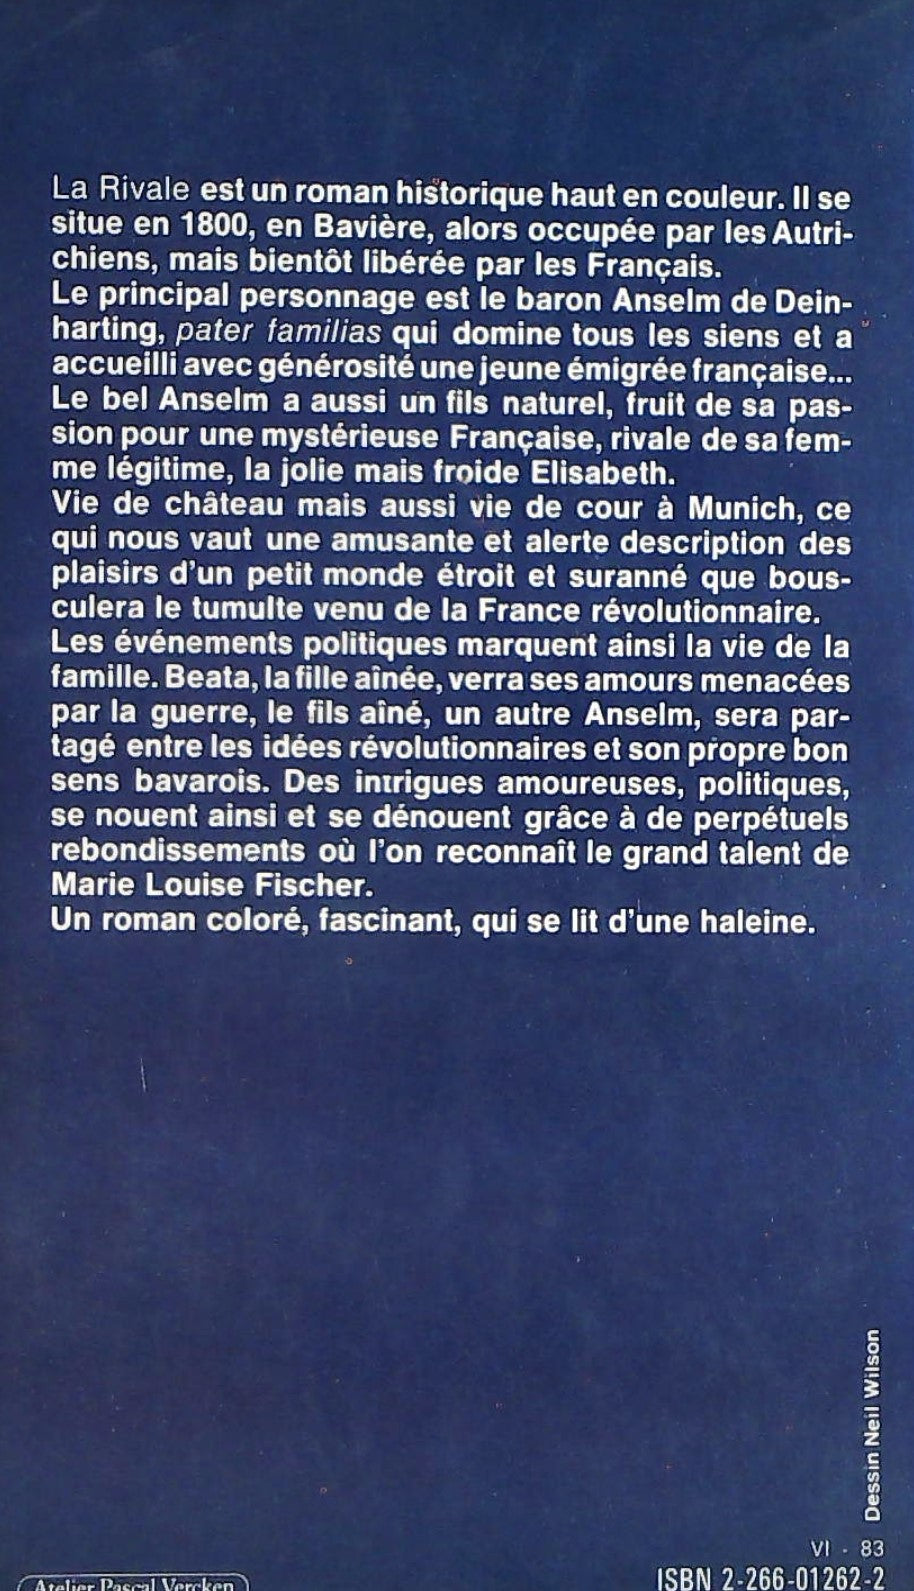 La rivale (Marie-Louise Fischer)